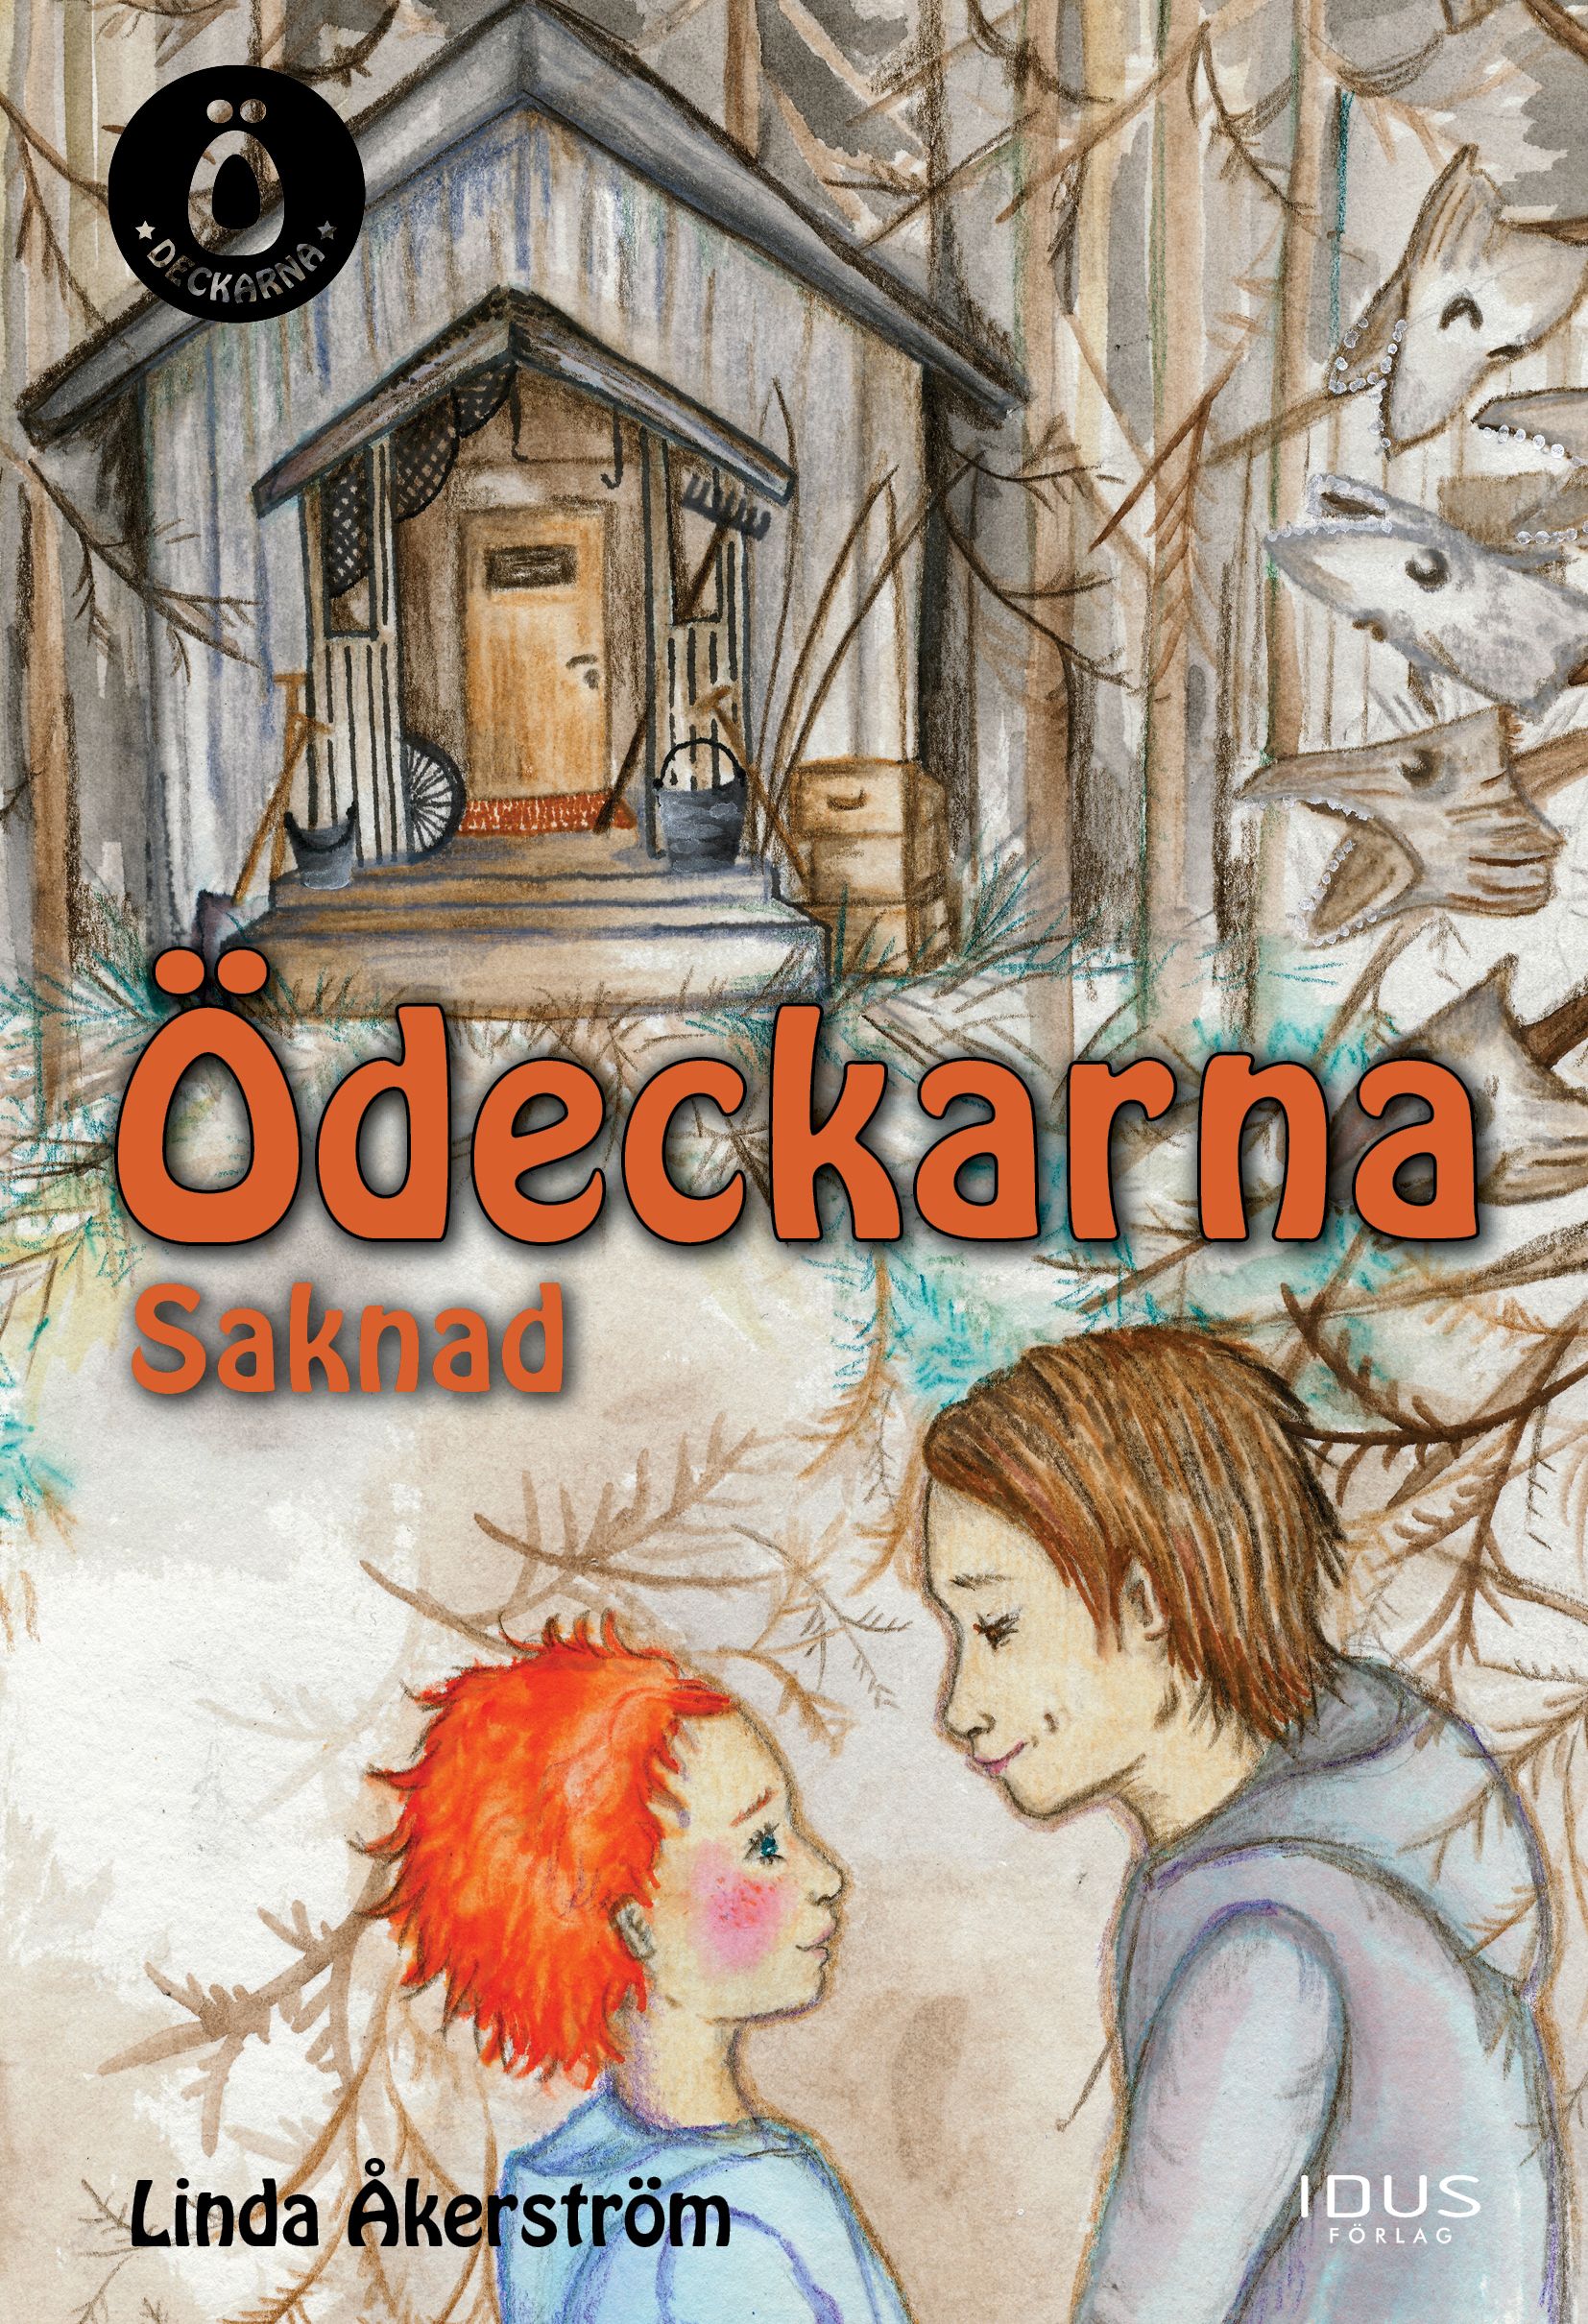 Ö-deckarna - Saknad, eBook by Linda Åkerström